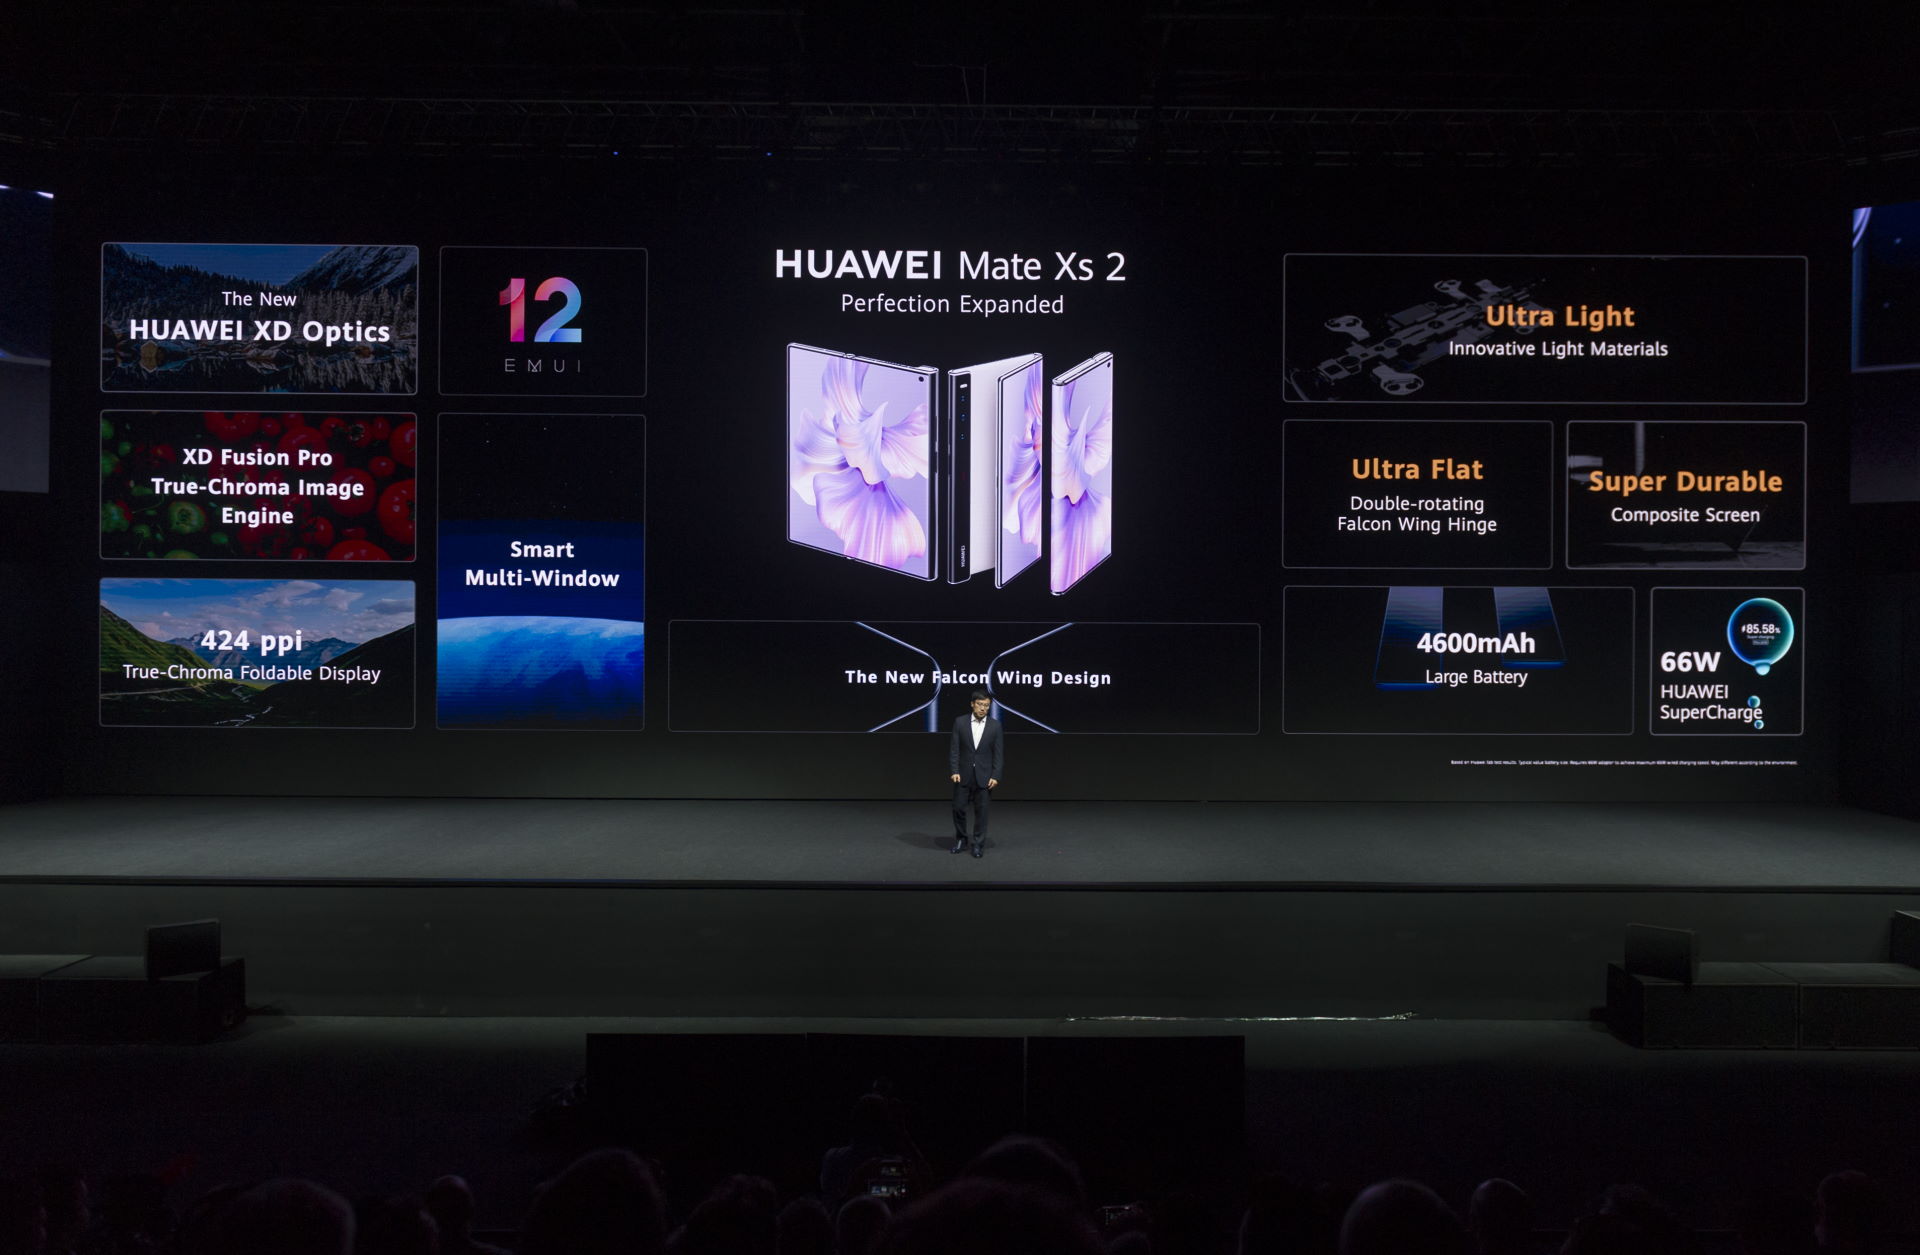 Huawei Mate Xs 2 